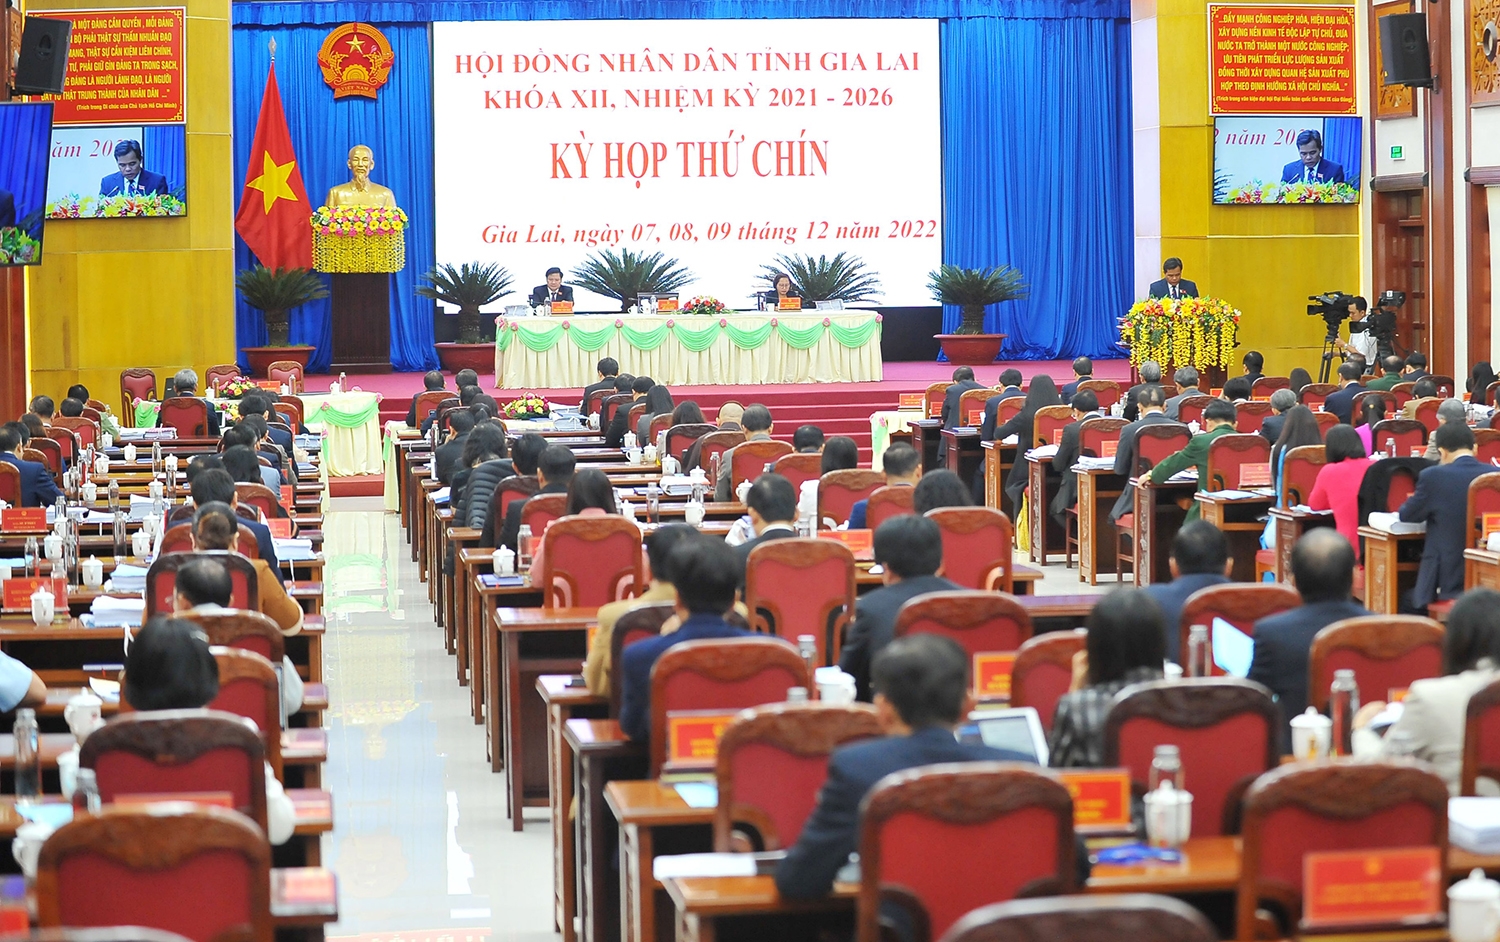 Quang cảnh khai mạc kỳ họp thứ 9 HĐND tỉnh Gia Lai